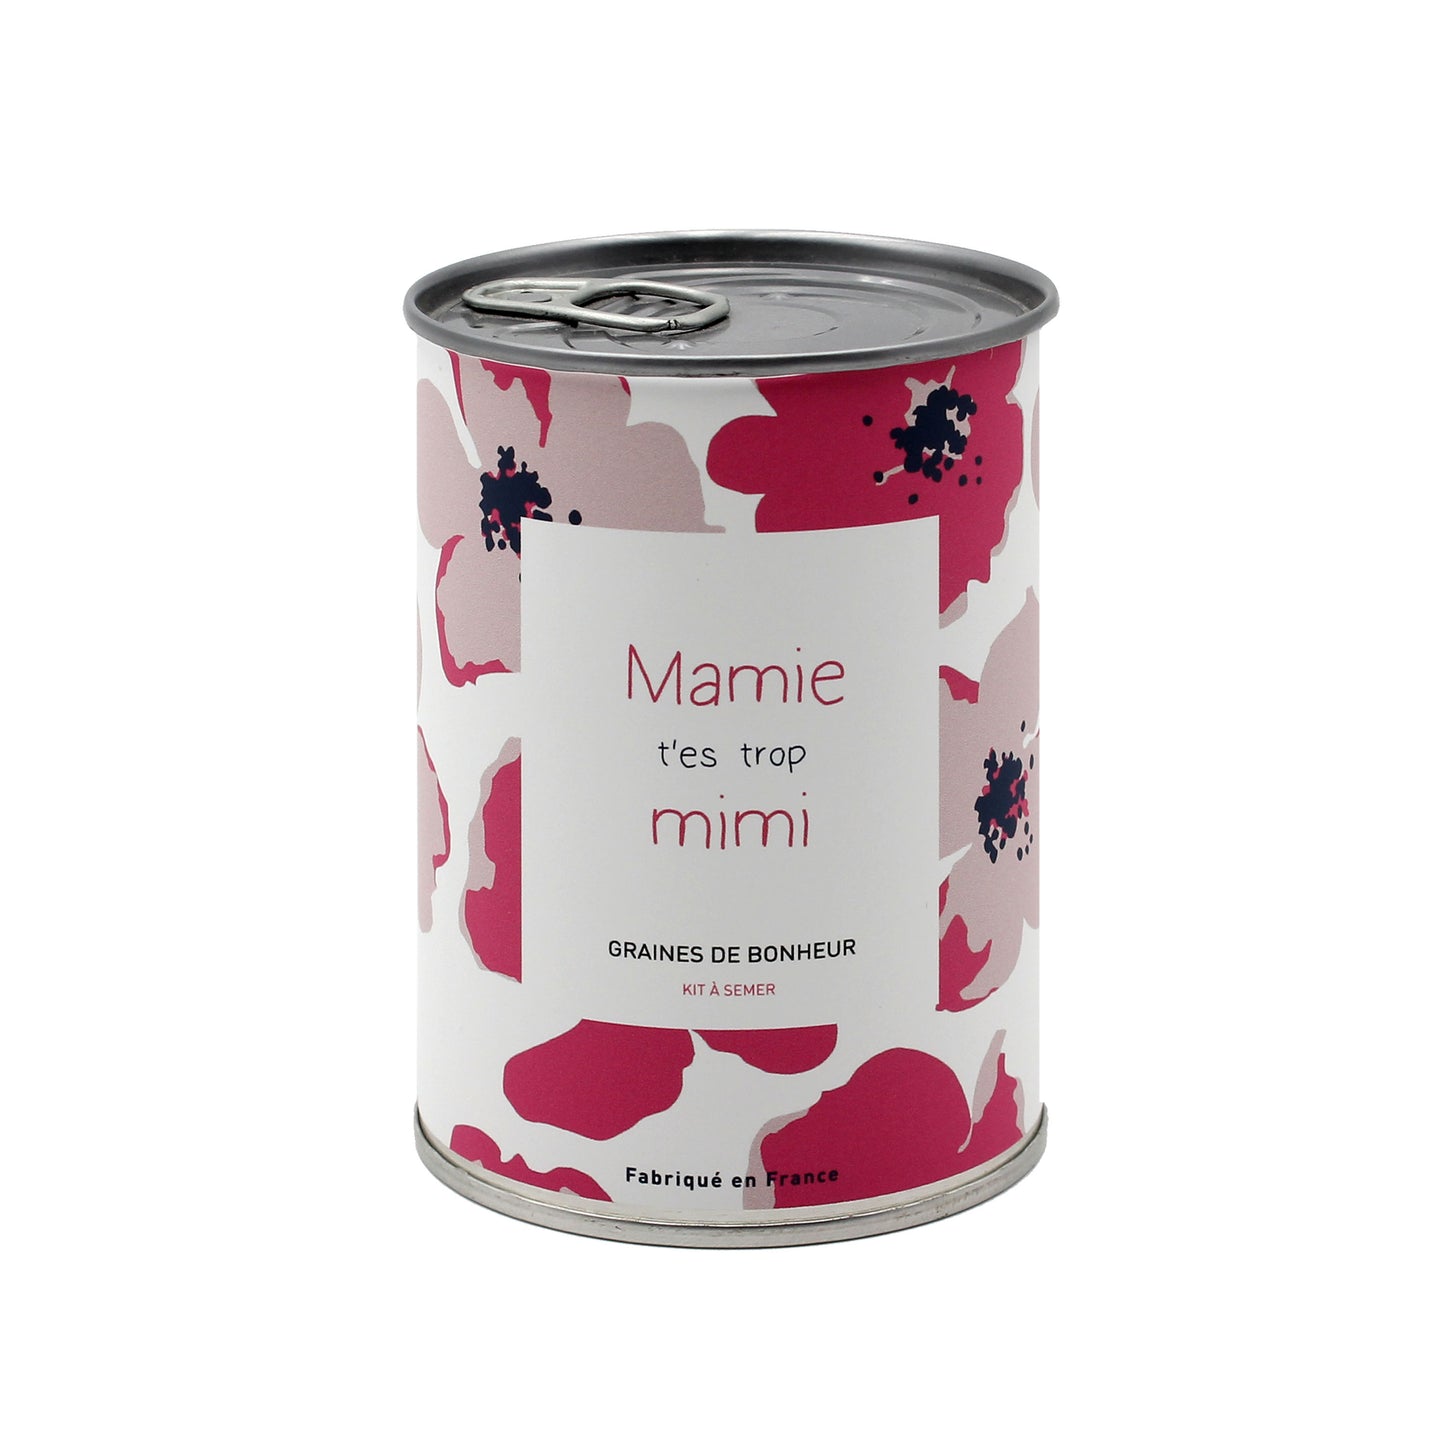 Kit à semer "Mamie t'es trop mimi" fabriqué en France